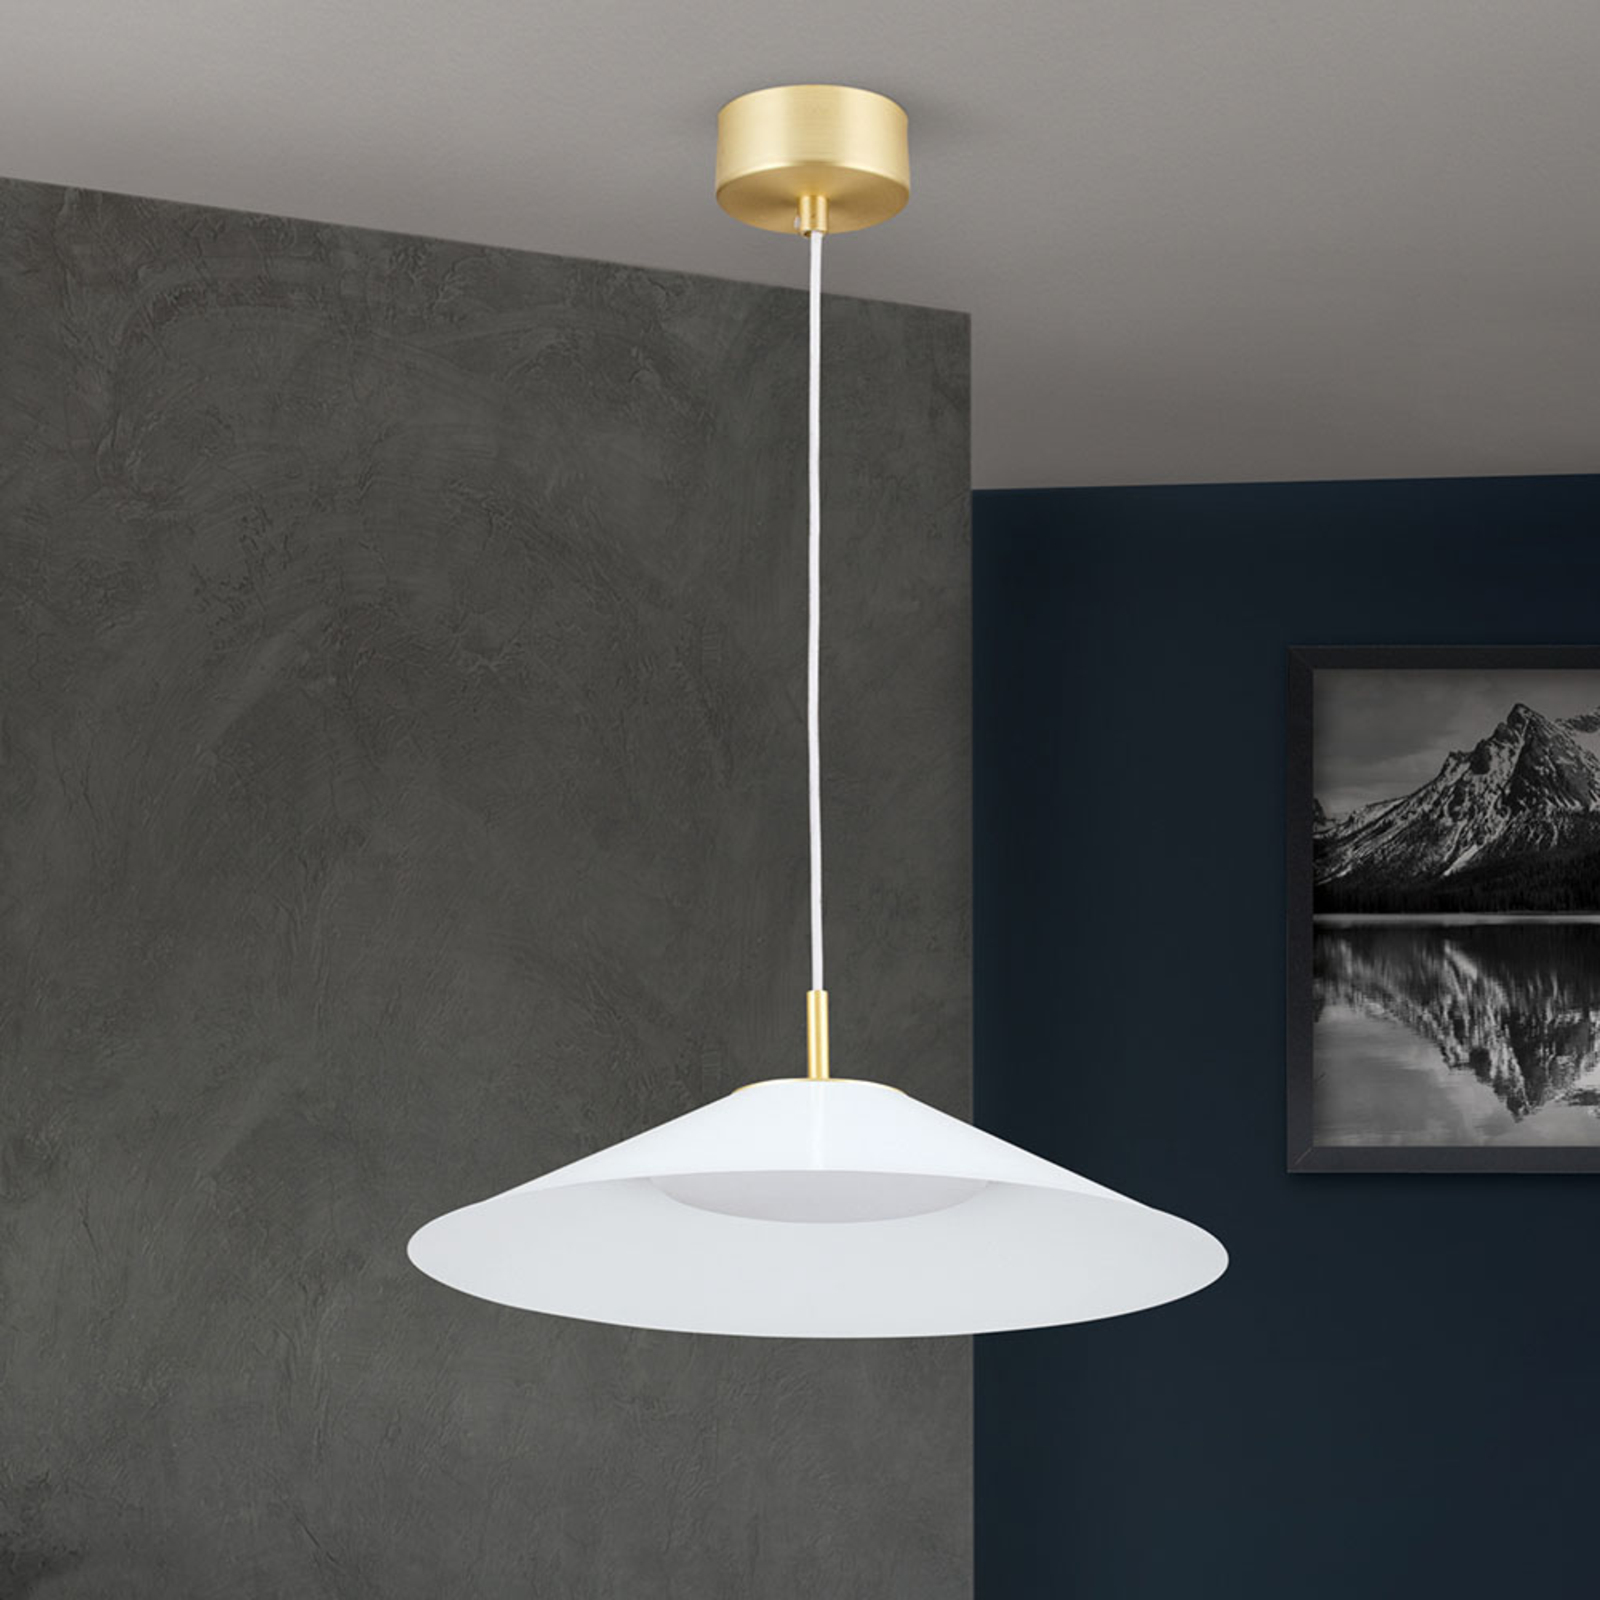 Gourmet LED pendant light, white lampshade